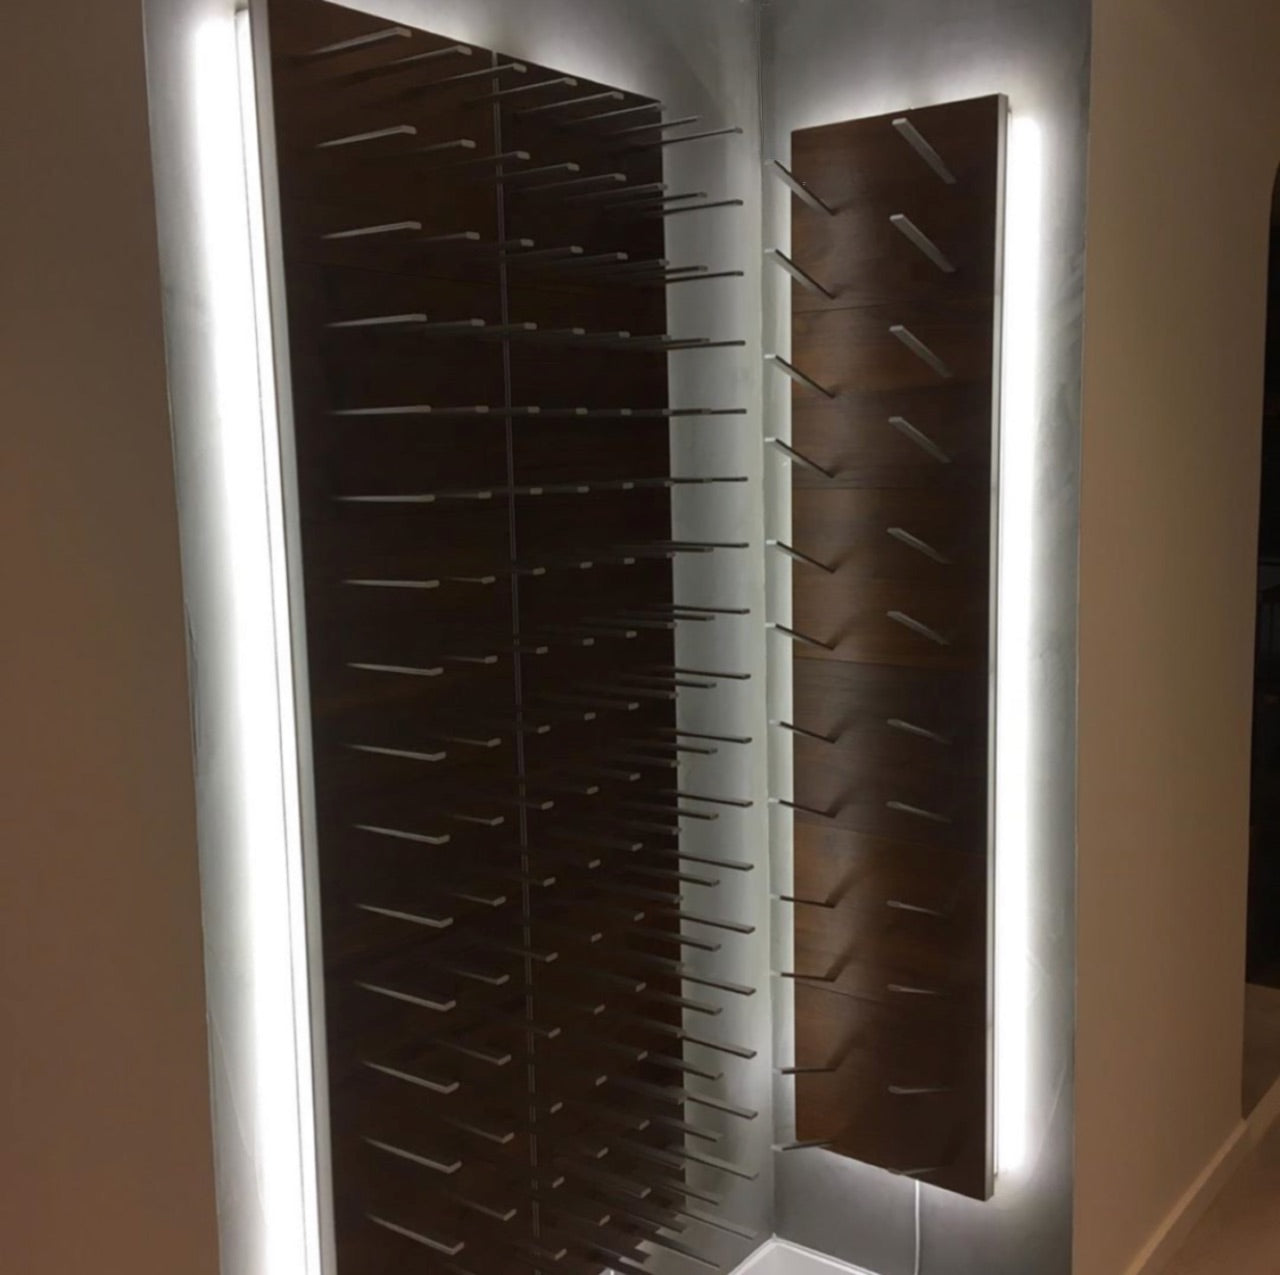 LED backlit wine racks in corner